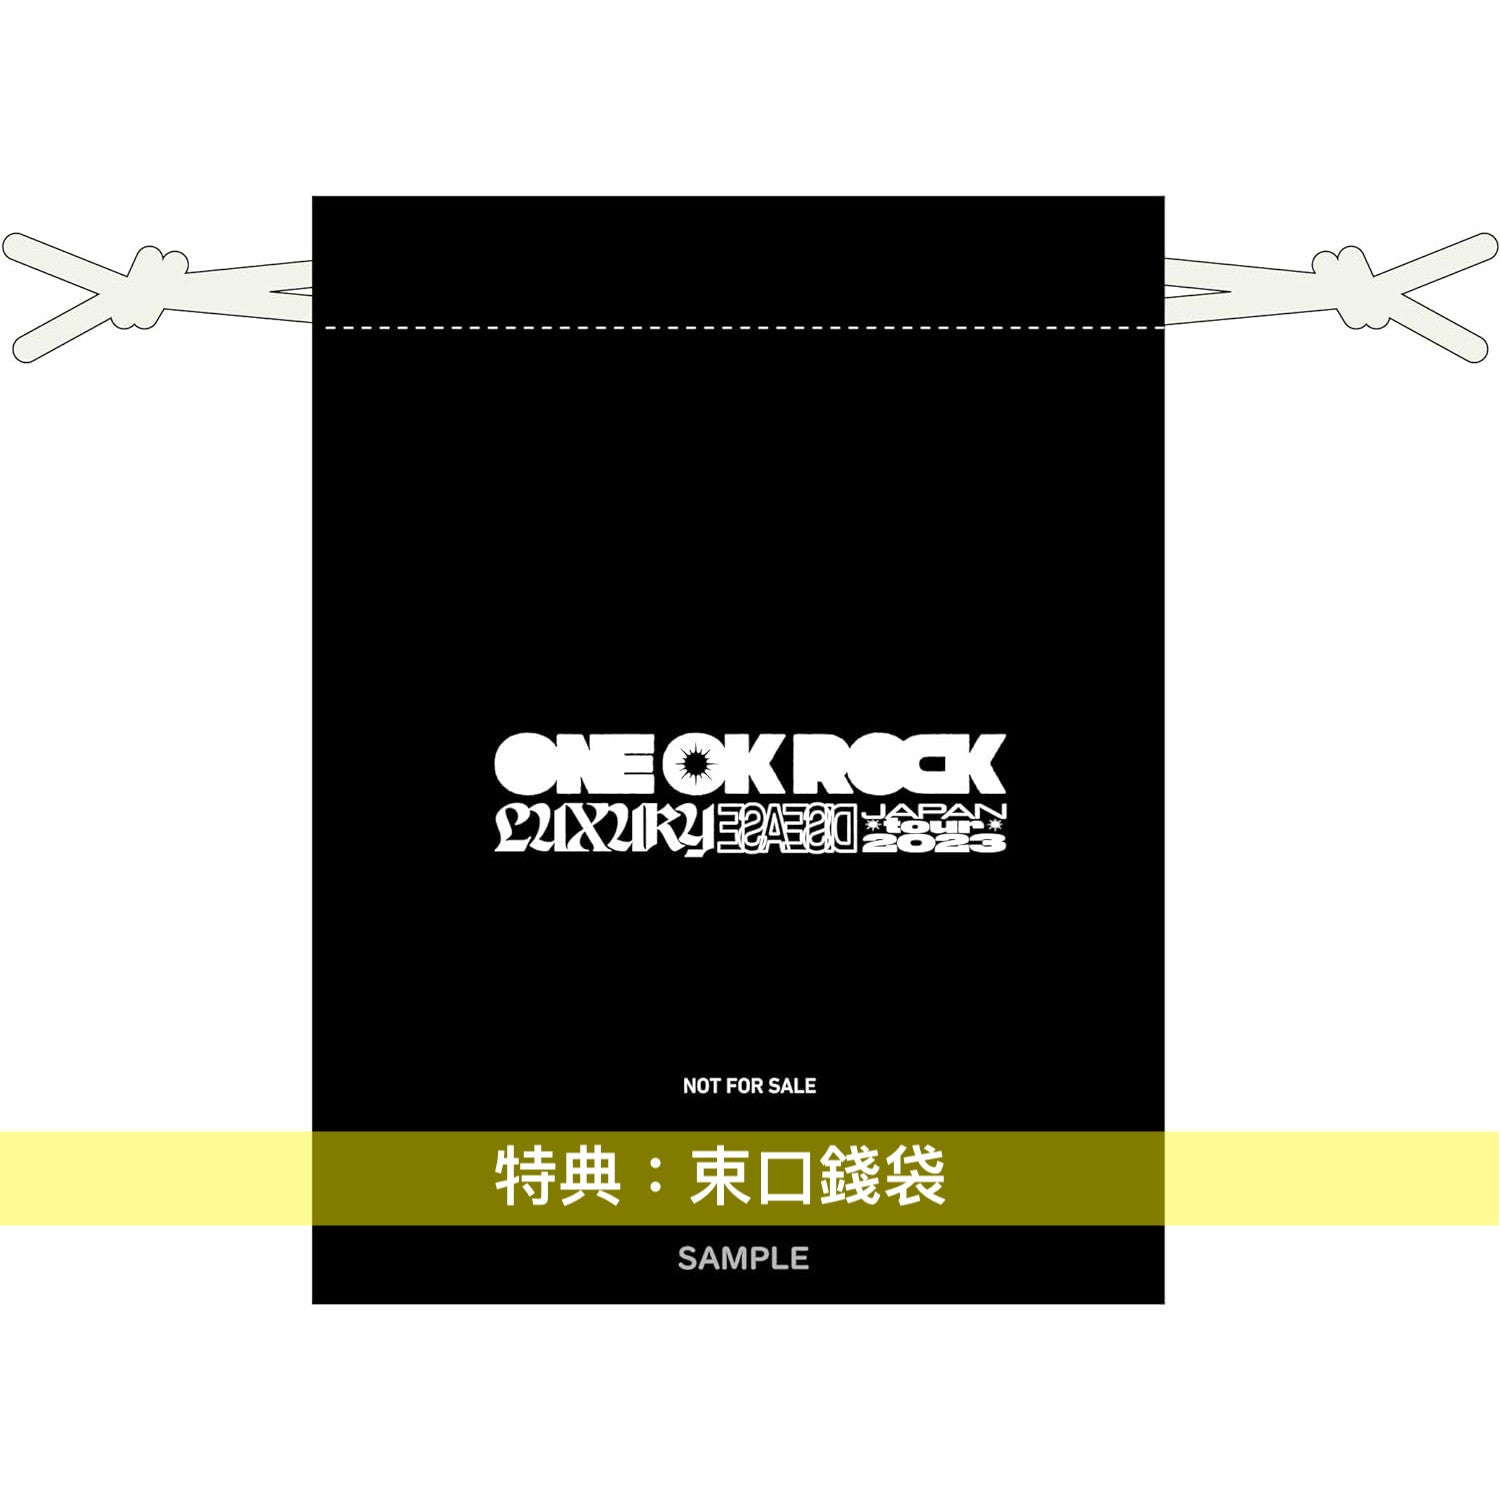 超安い】 【大幅値下げ】ONE OK CD LiveDVD/Blu-ray, ROCK 